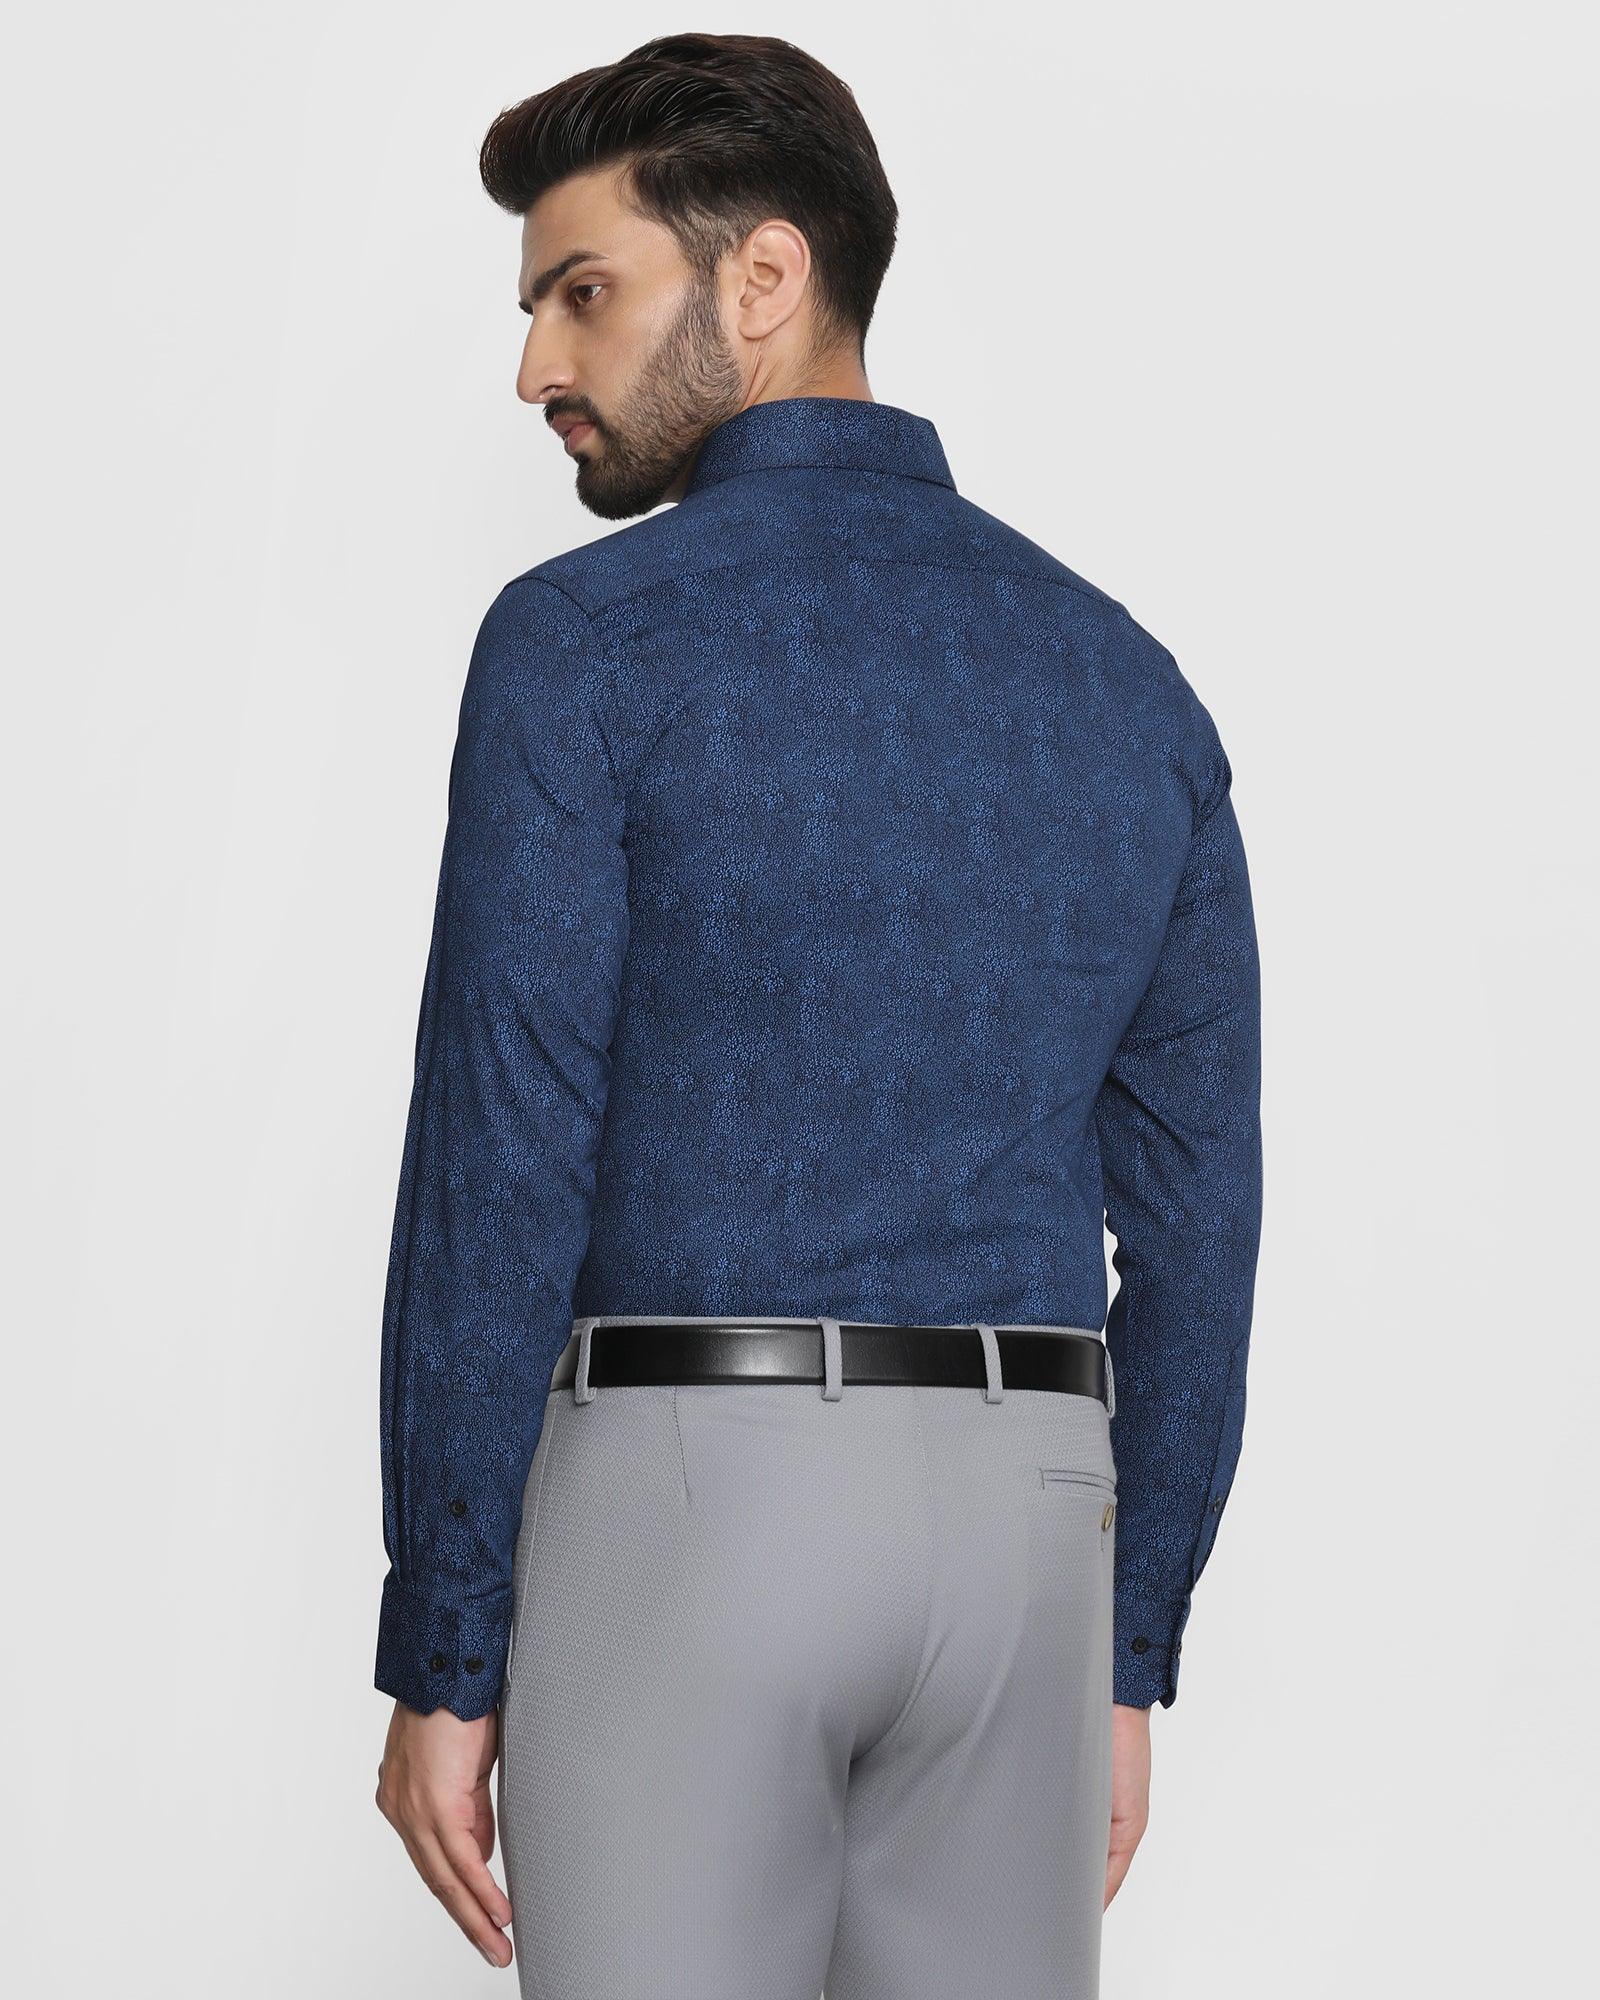 Formal Blue Printed Shirt - Aldo